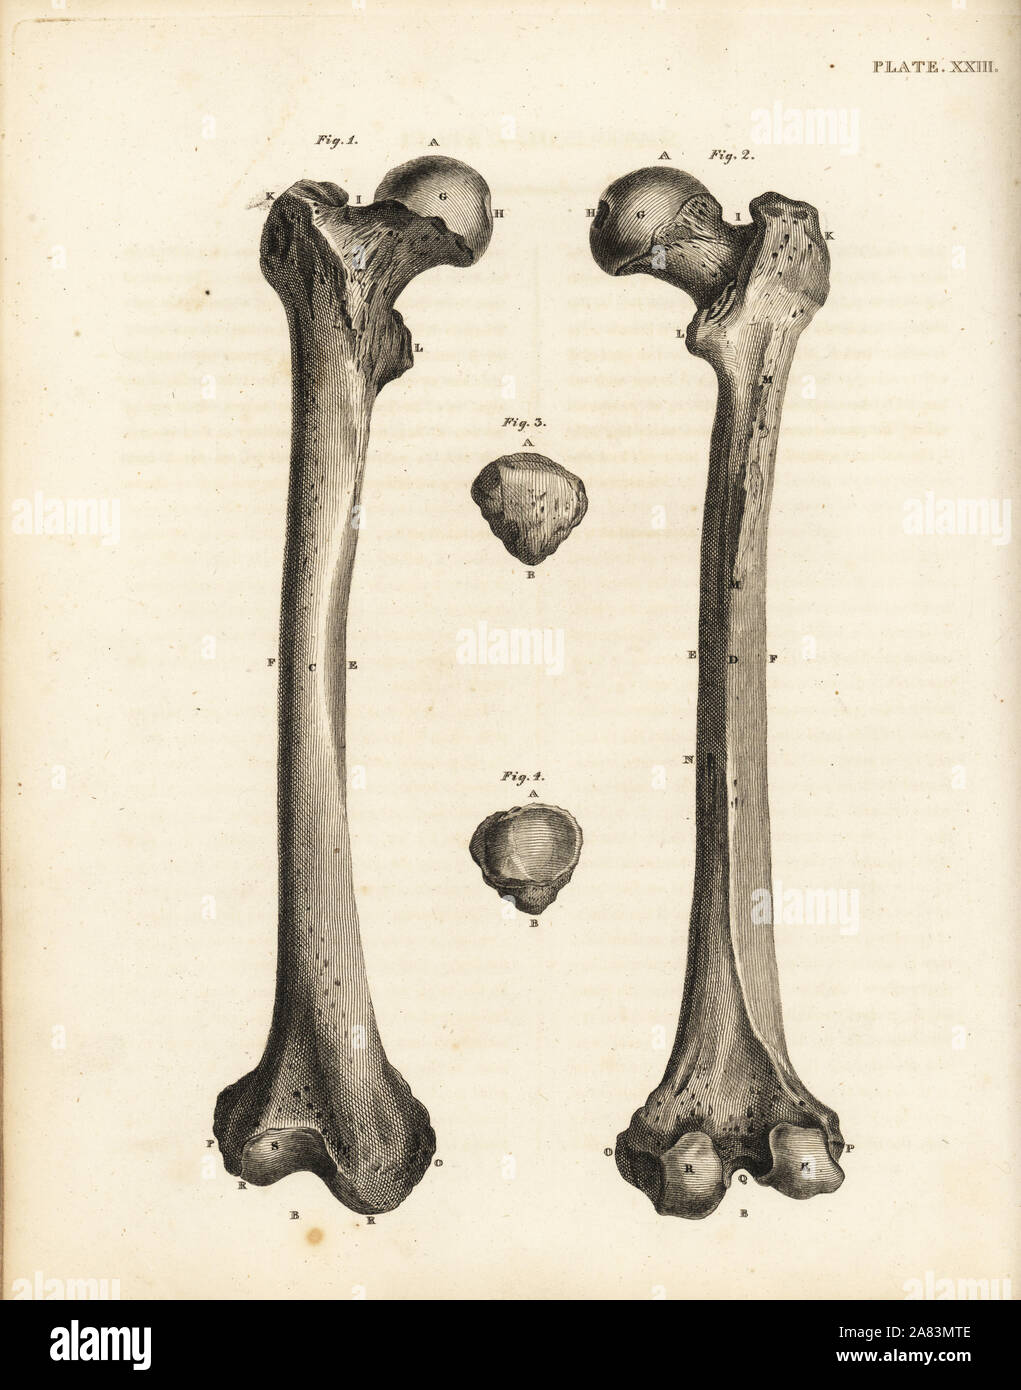 Blick auf die Oberschenkel und rotula Knochen im menschlichen Bein. Kupferstich von Edward Mitchell nach einem anatomischen Illustration von jean-joseph Sue von John Barclay ist eine Reihe von Stichen des menschlichen Skeletts, MacLachlan und Stewart, Edinburgh, 1824. Stockfoto